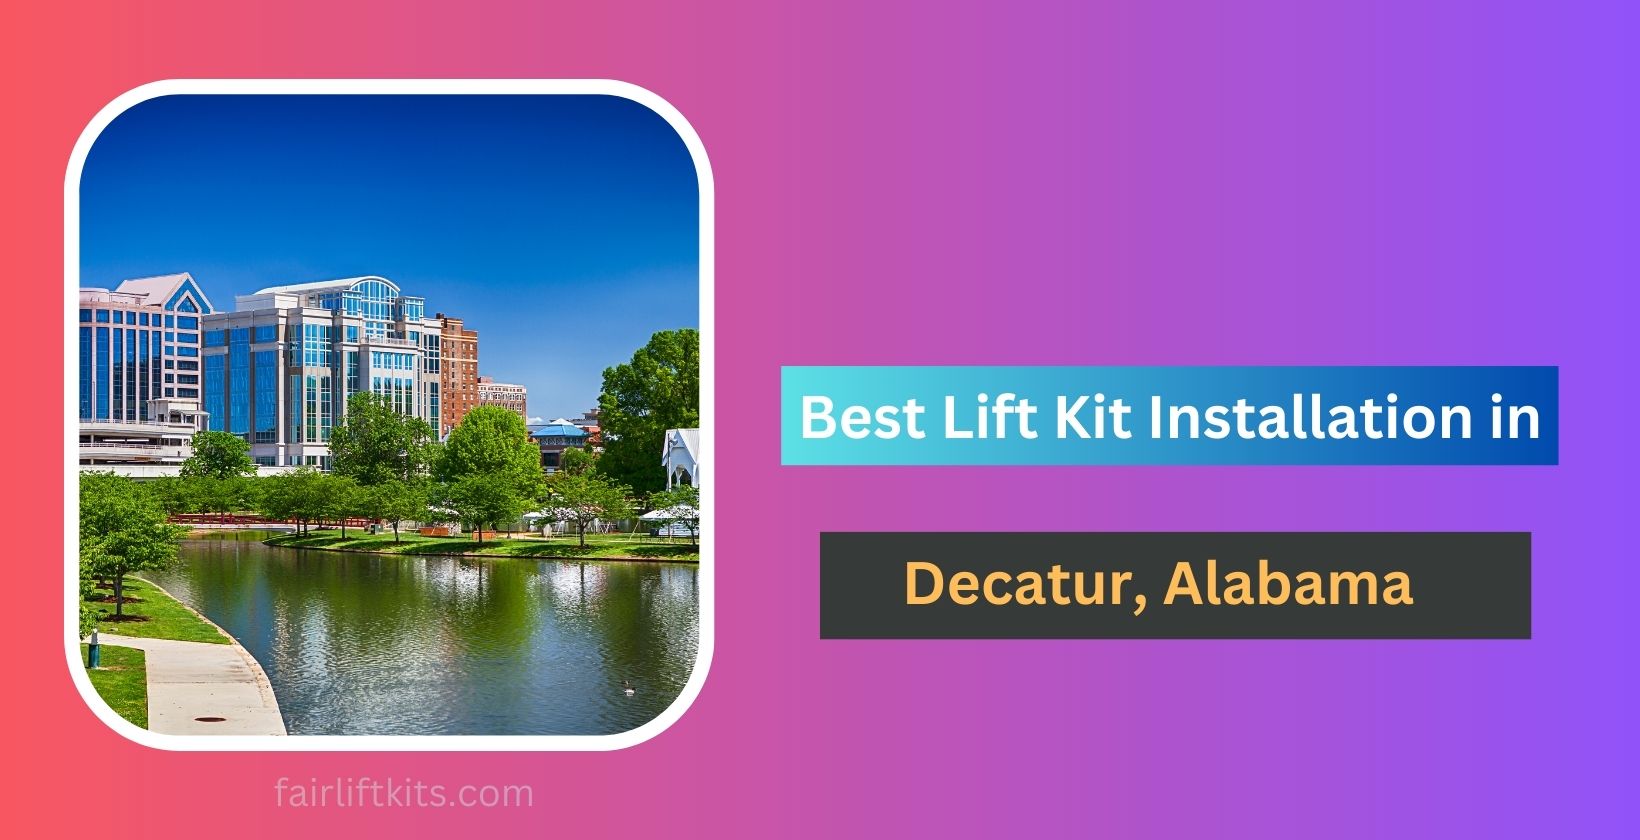 10 Best Lift Kit Installation in Decatur